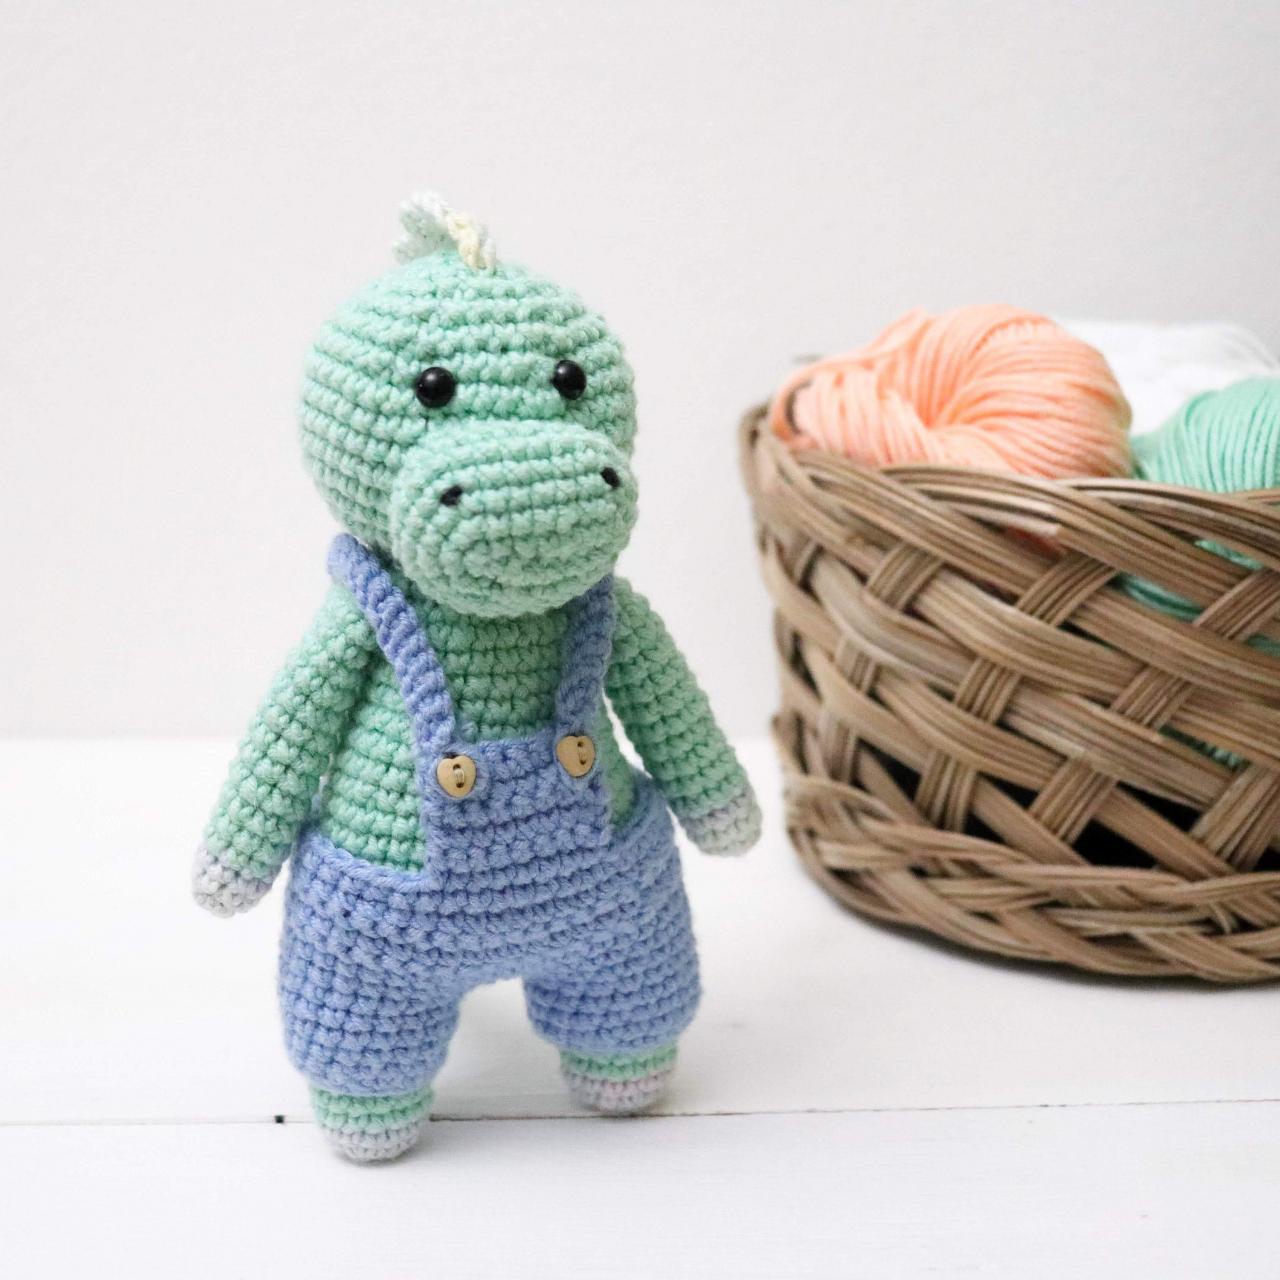 Amigurumi dino Crochet dino Plush dino Stuffed dino toy Crochet animal Baby soft toy Newborn baby gift Baby shower gift Dinosaur crochet